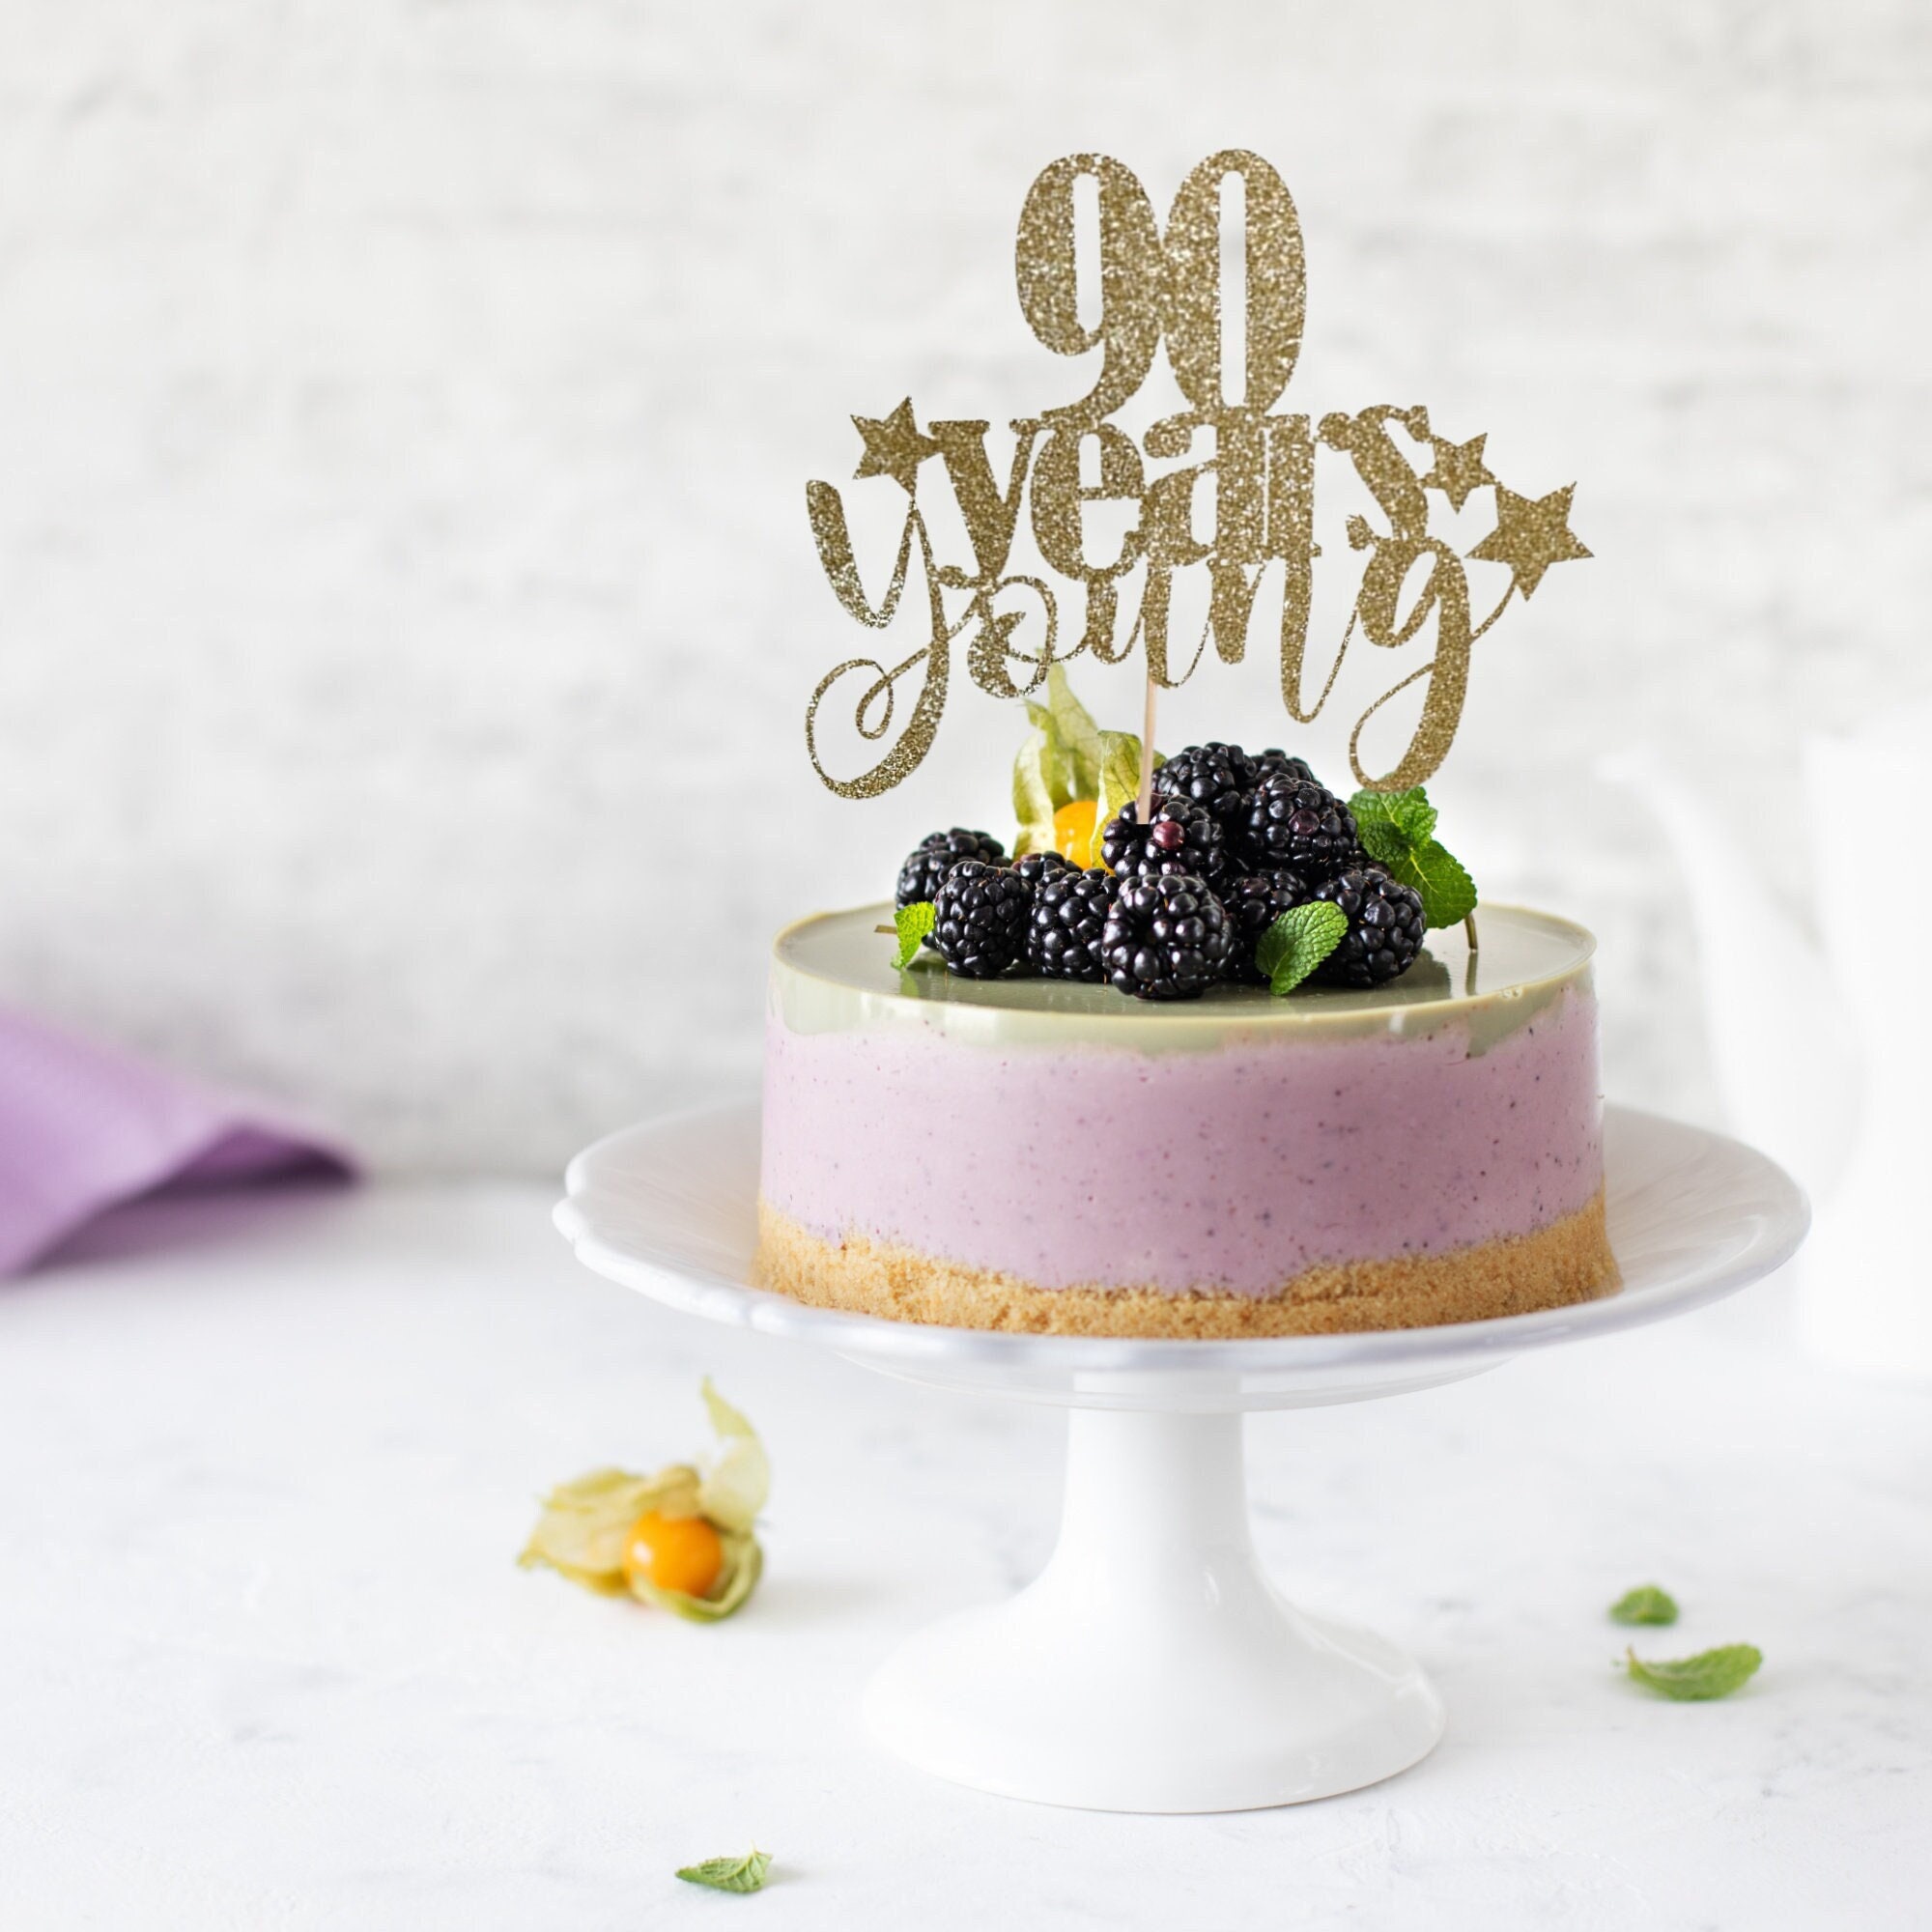 Cheers to 20 years Cake Topper elegante de madera para tarta de feliz  cumpleaños, personalizado, para hombres y mujeres, cualquier edad, nombre